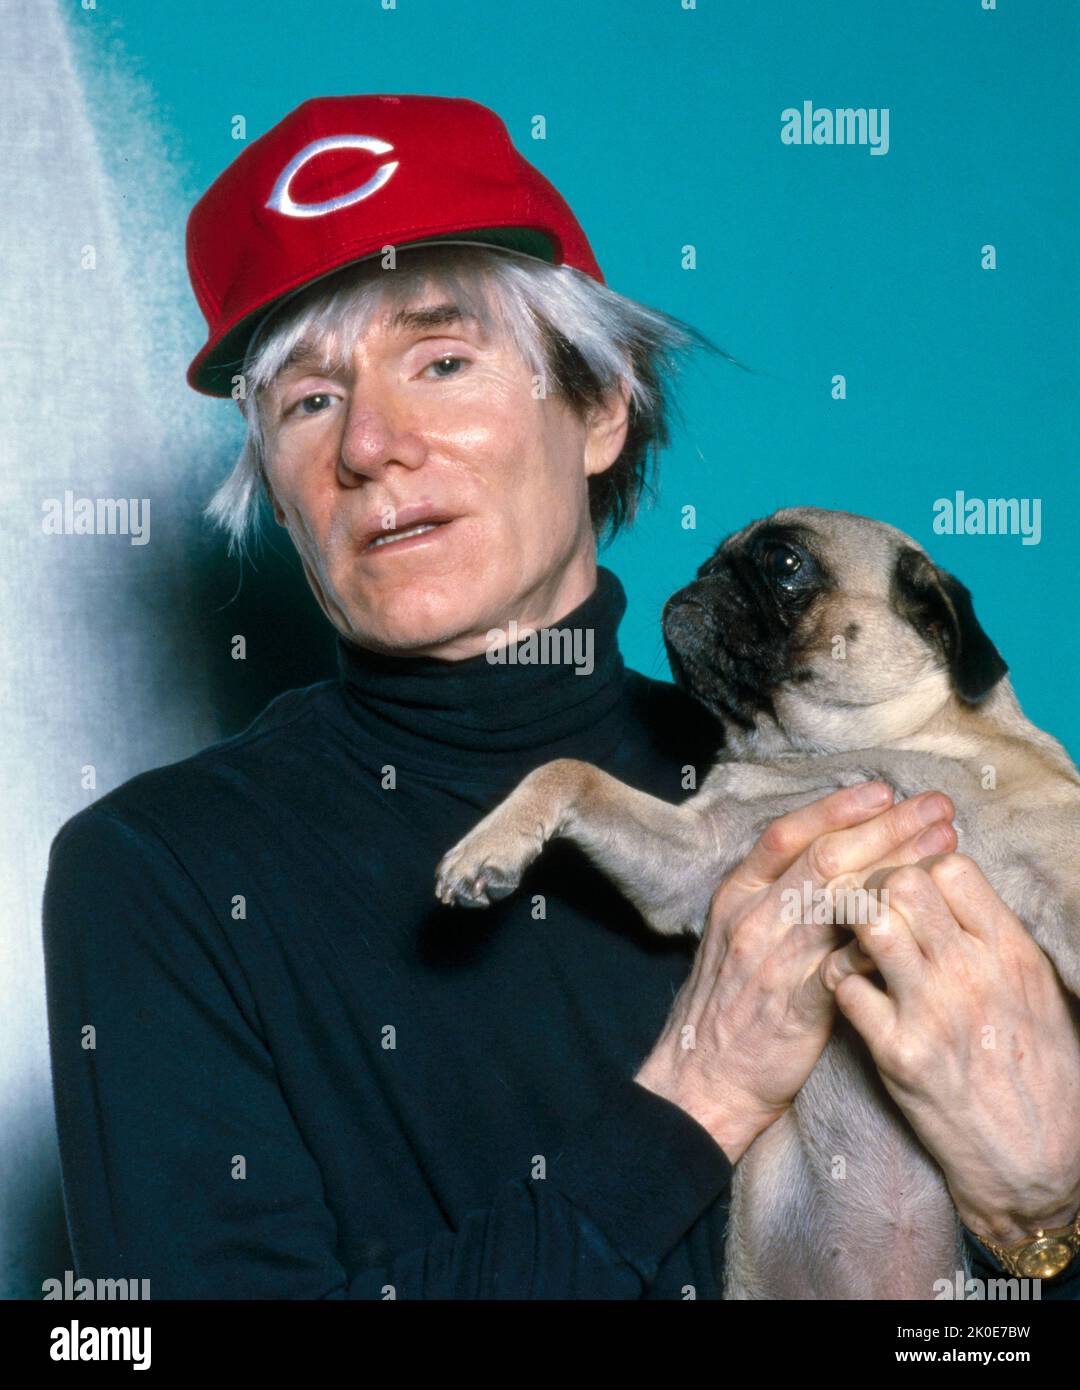 Andy Warhol (1928 - 1987) amerikanischer Künstler, Filmregisseur und Produzent, der eine führende Figur in der bildenden Kunstbewegung war, die als Pop Art bekannt ist Stockfoto